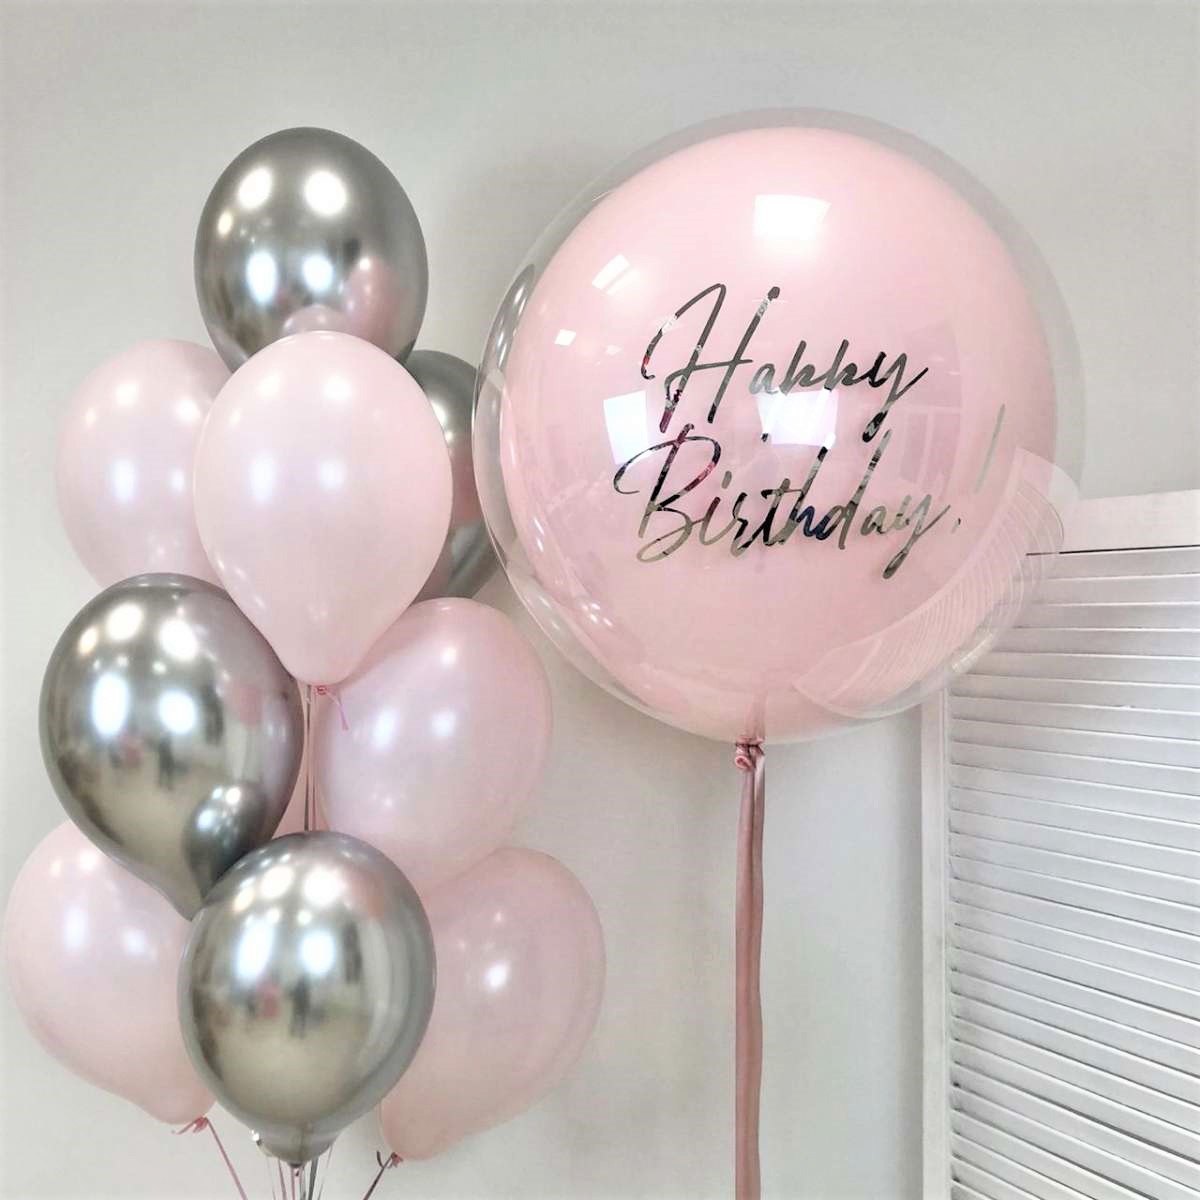 Cтеклянный шар с надписью Happy Birthday и связка из 10 шаров 